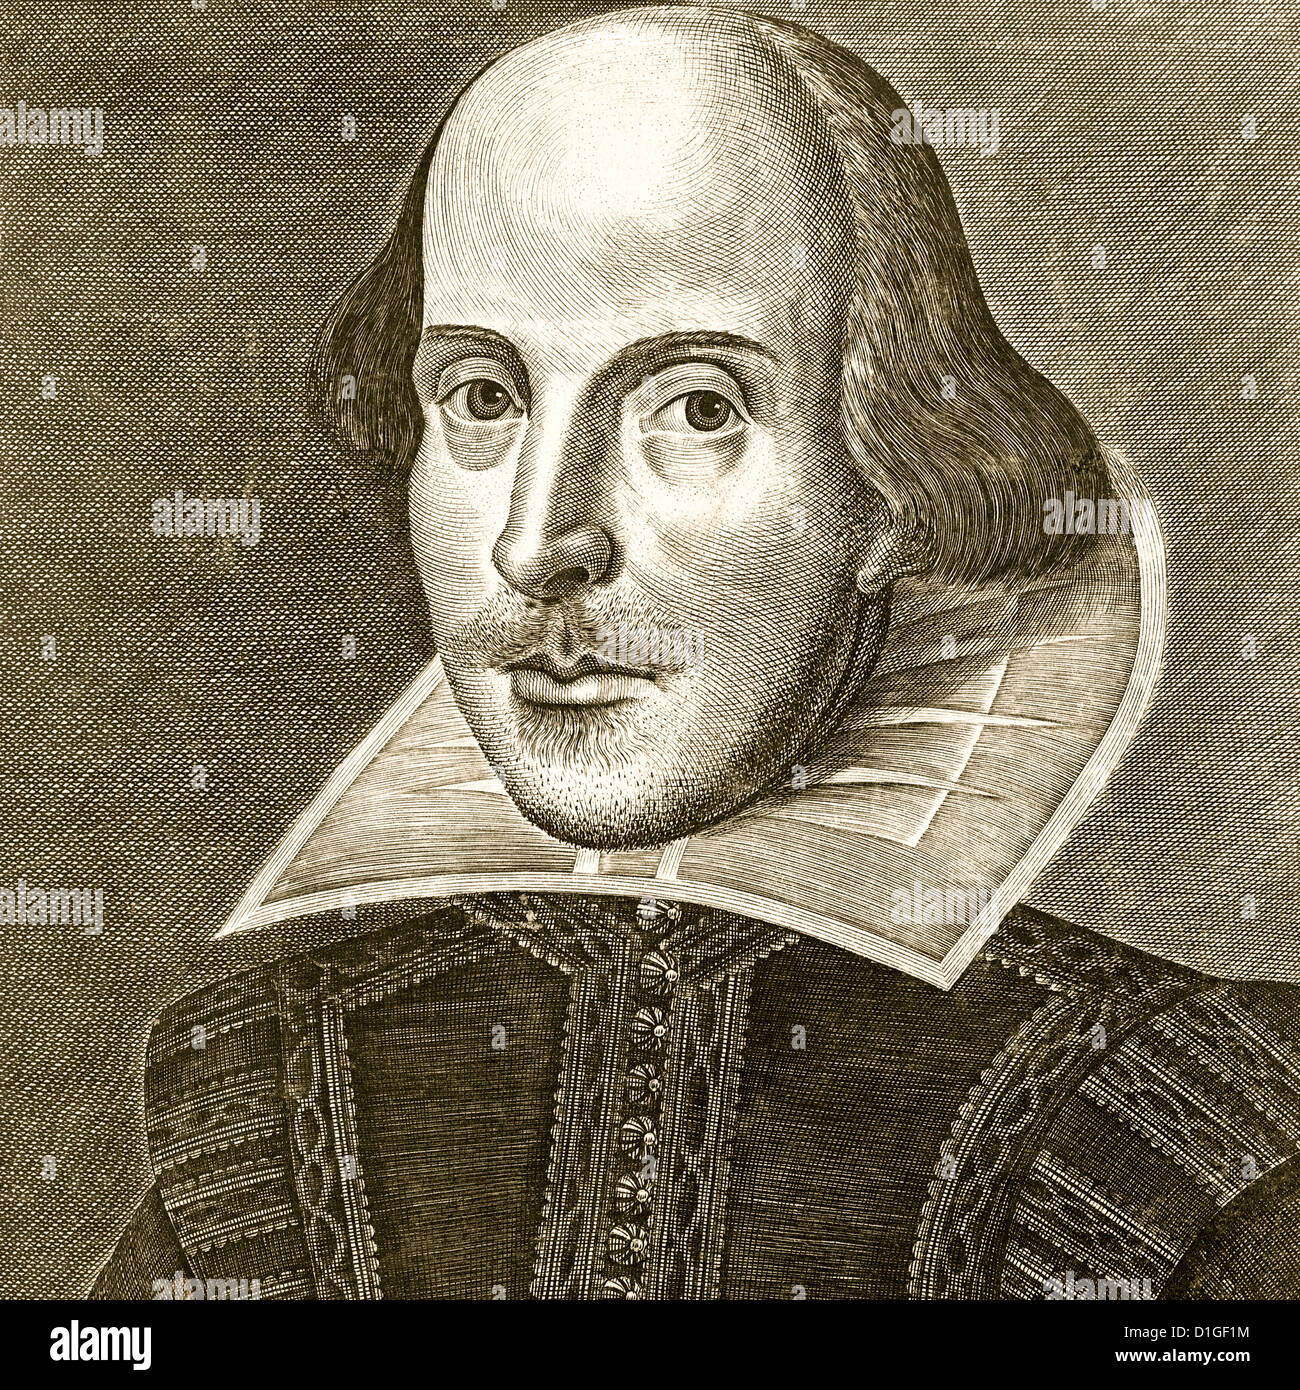 Shakespeare. Gravure Portrait de William Shakespeare par Martin Droeshout comme le frontispice du premier Folio de Collected Works en 1623 Banque D'Images